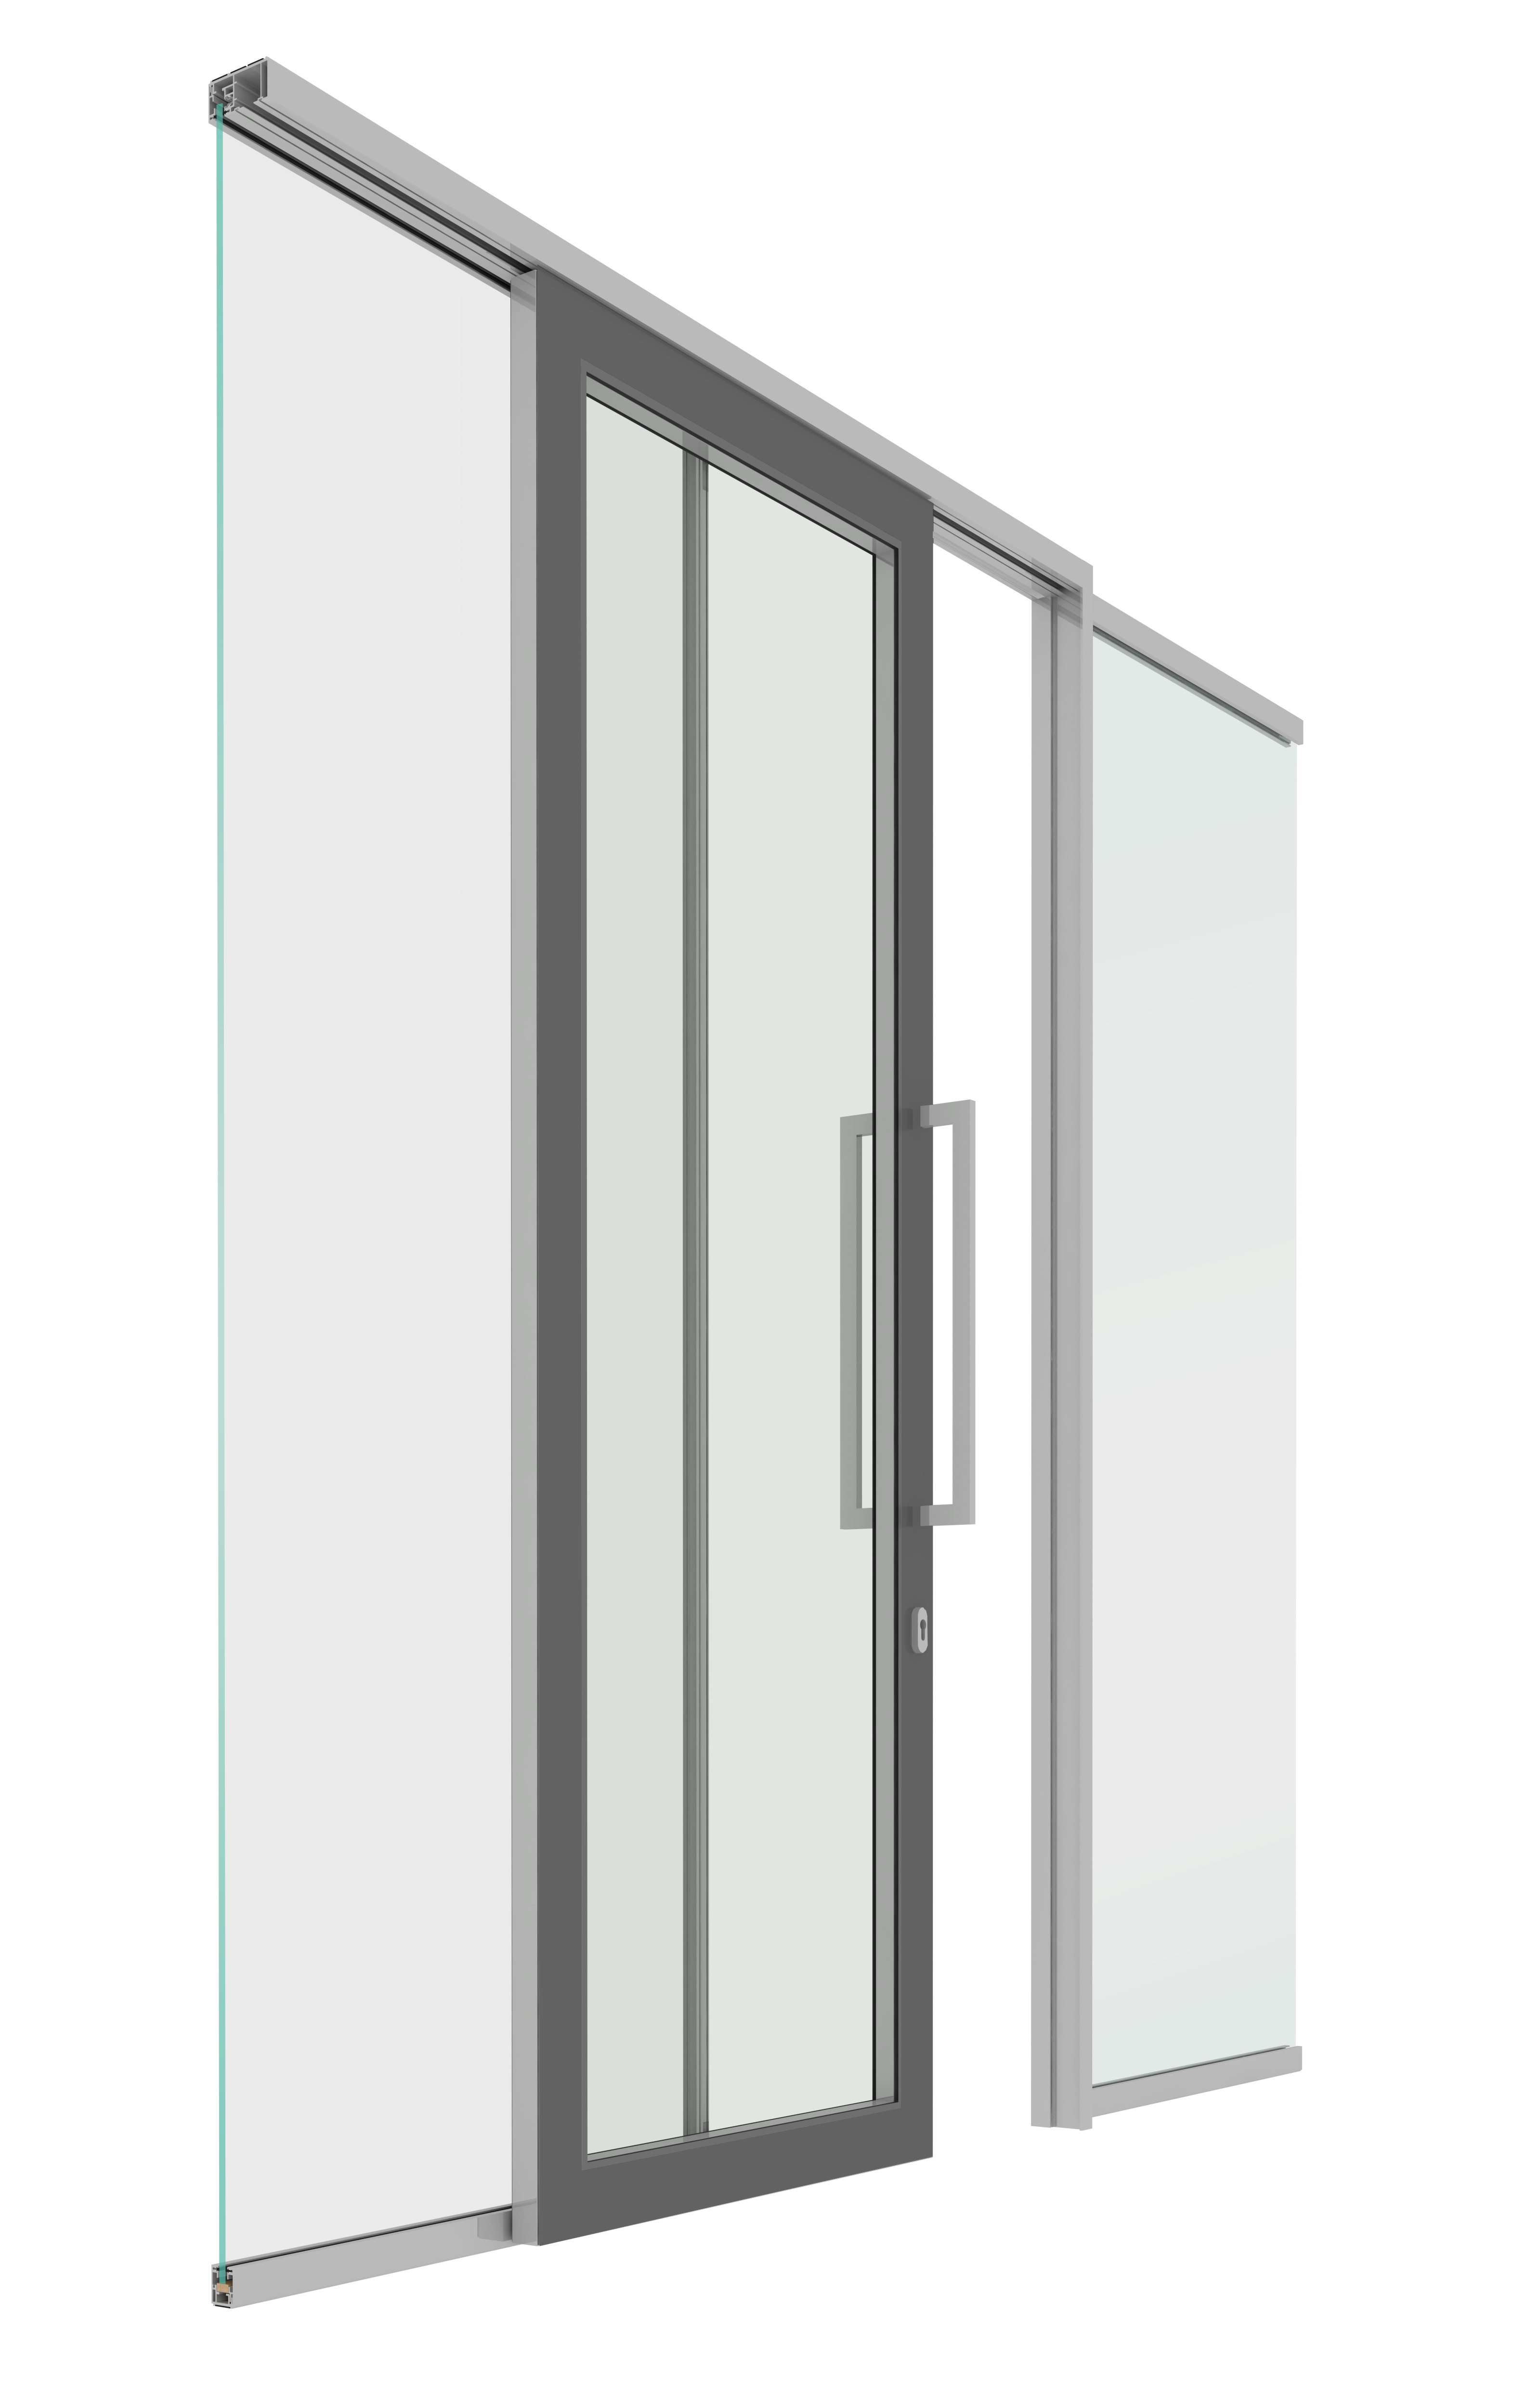 Modular doors